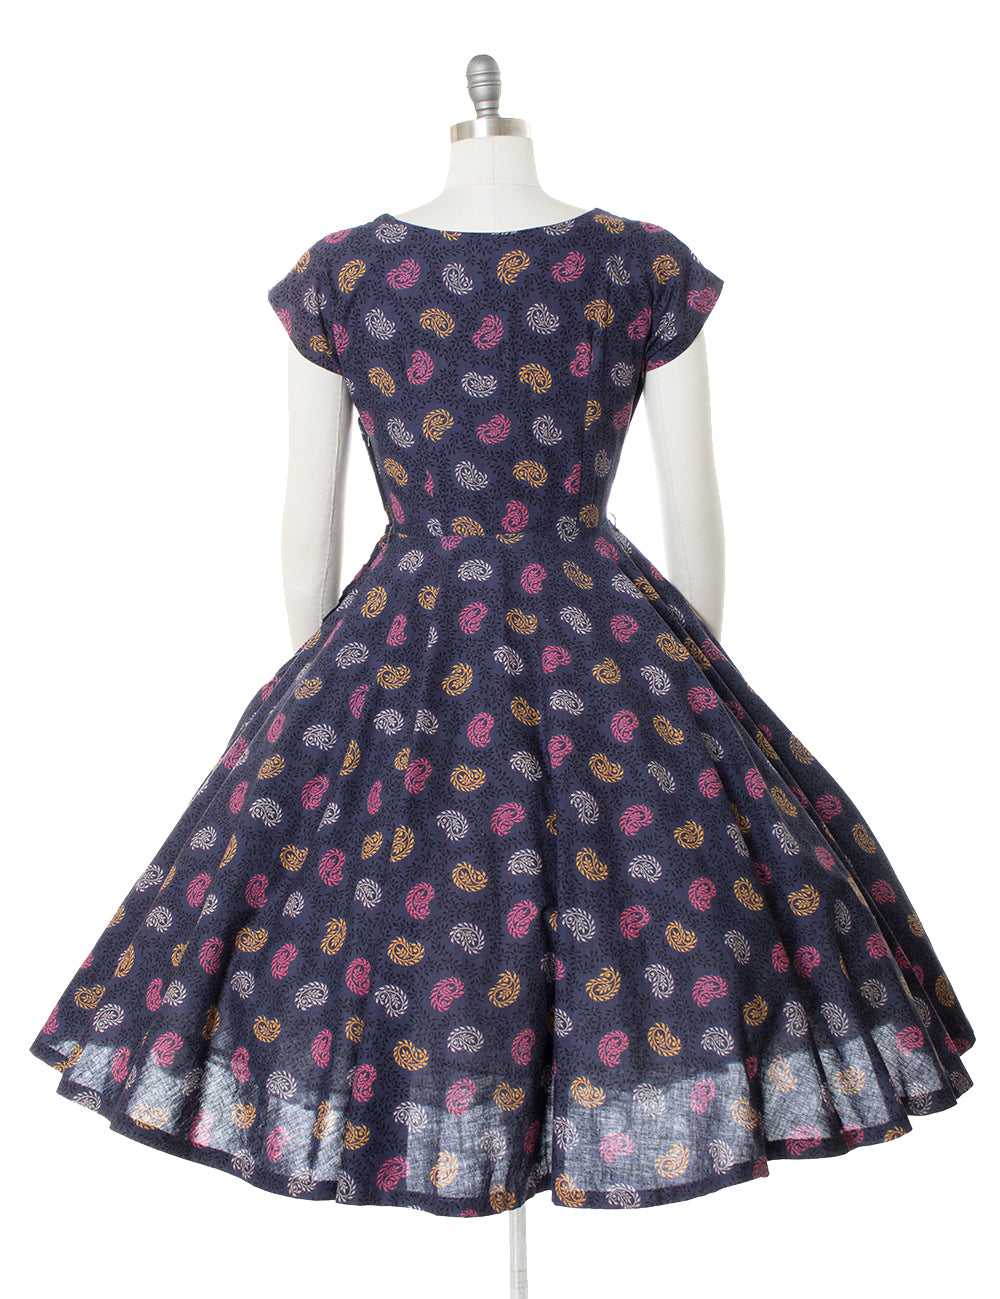 $65 DRESS SALE /// 1950s Paisley Cotton Circle Sk… - image 4